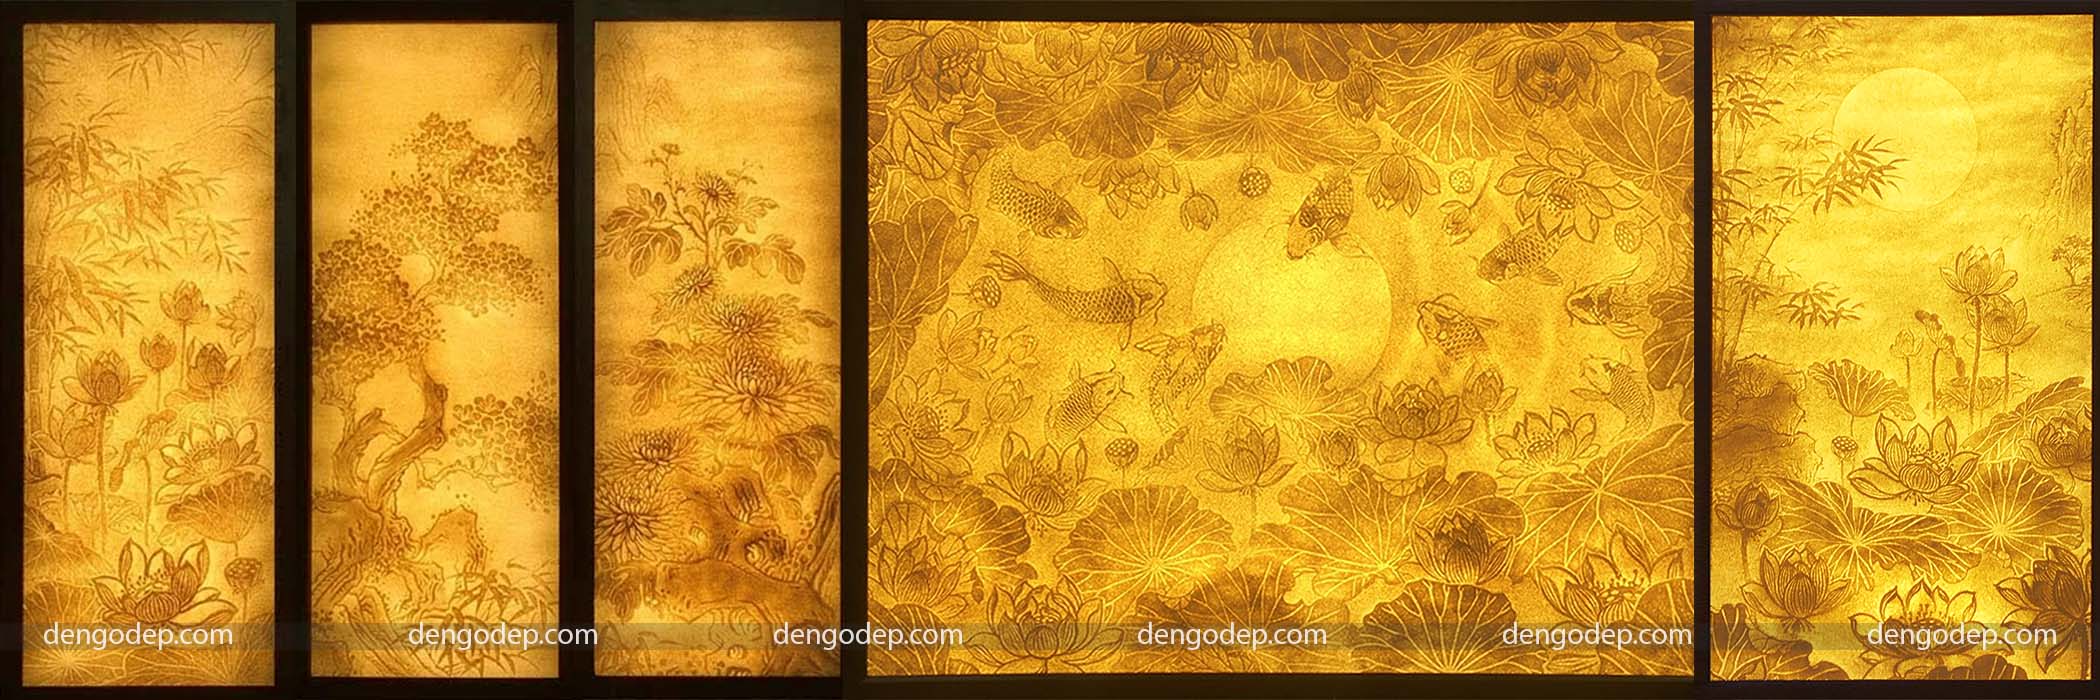 Đèn tranh ốp tường hoa sen hình chữ nhật làm từ giấy dừa hoặc giấy trúc chỉ chất lượng cao